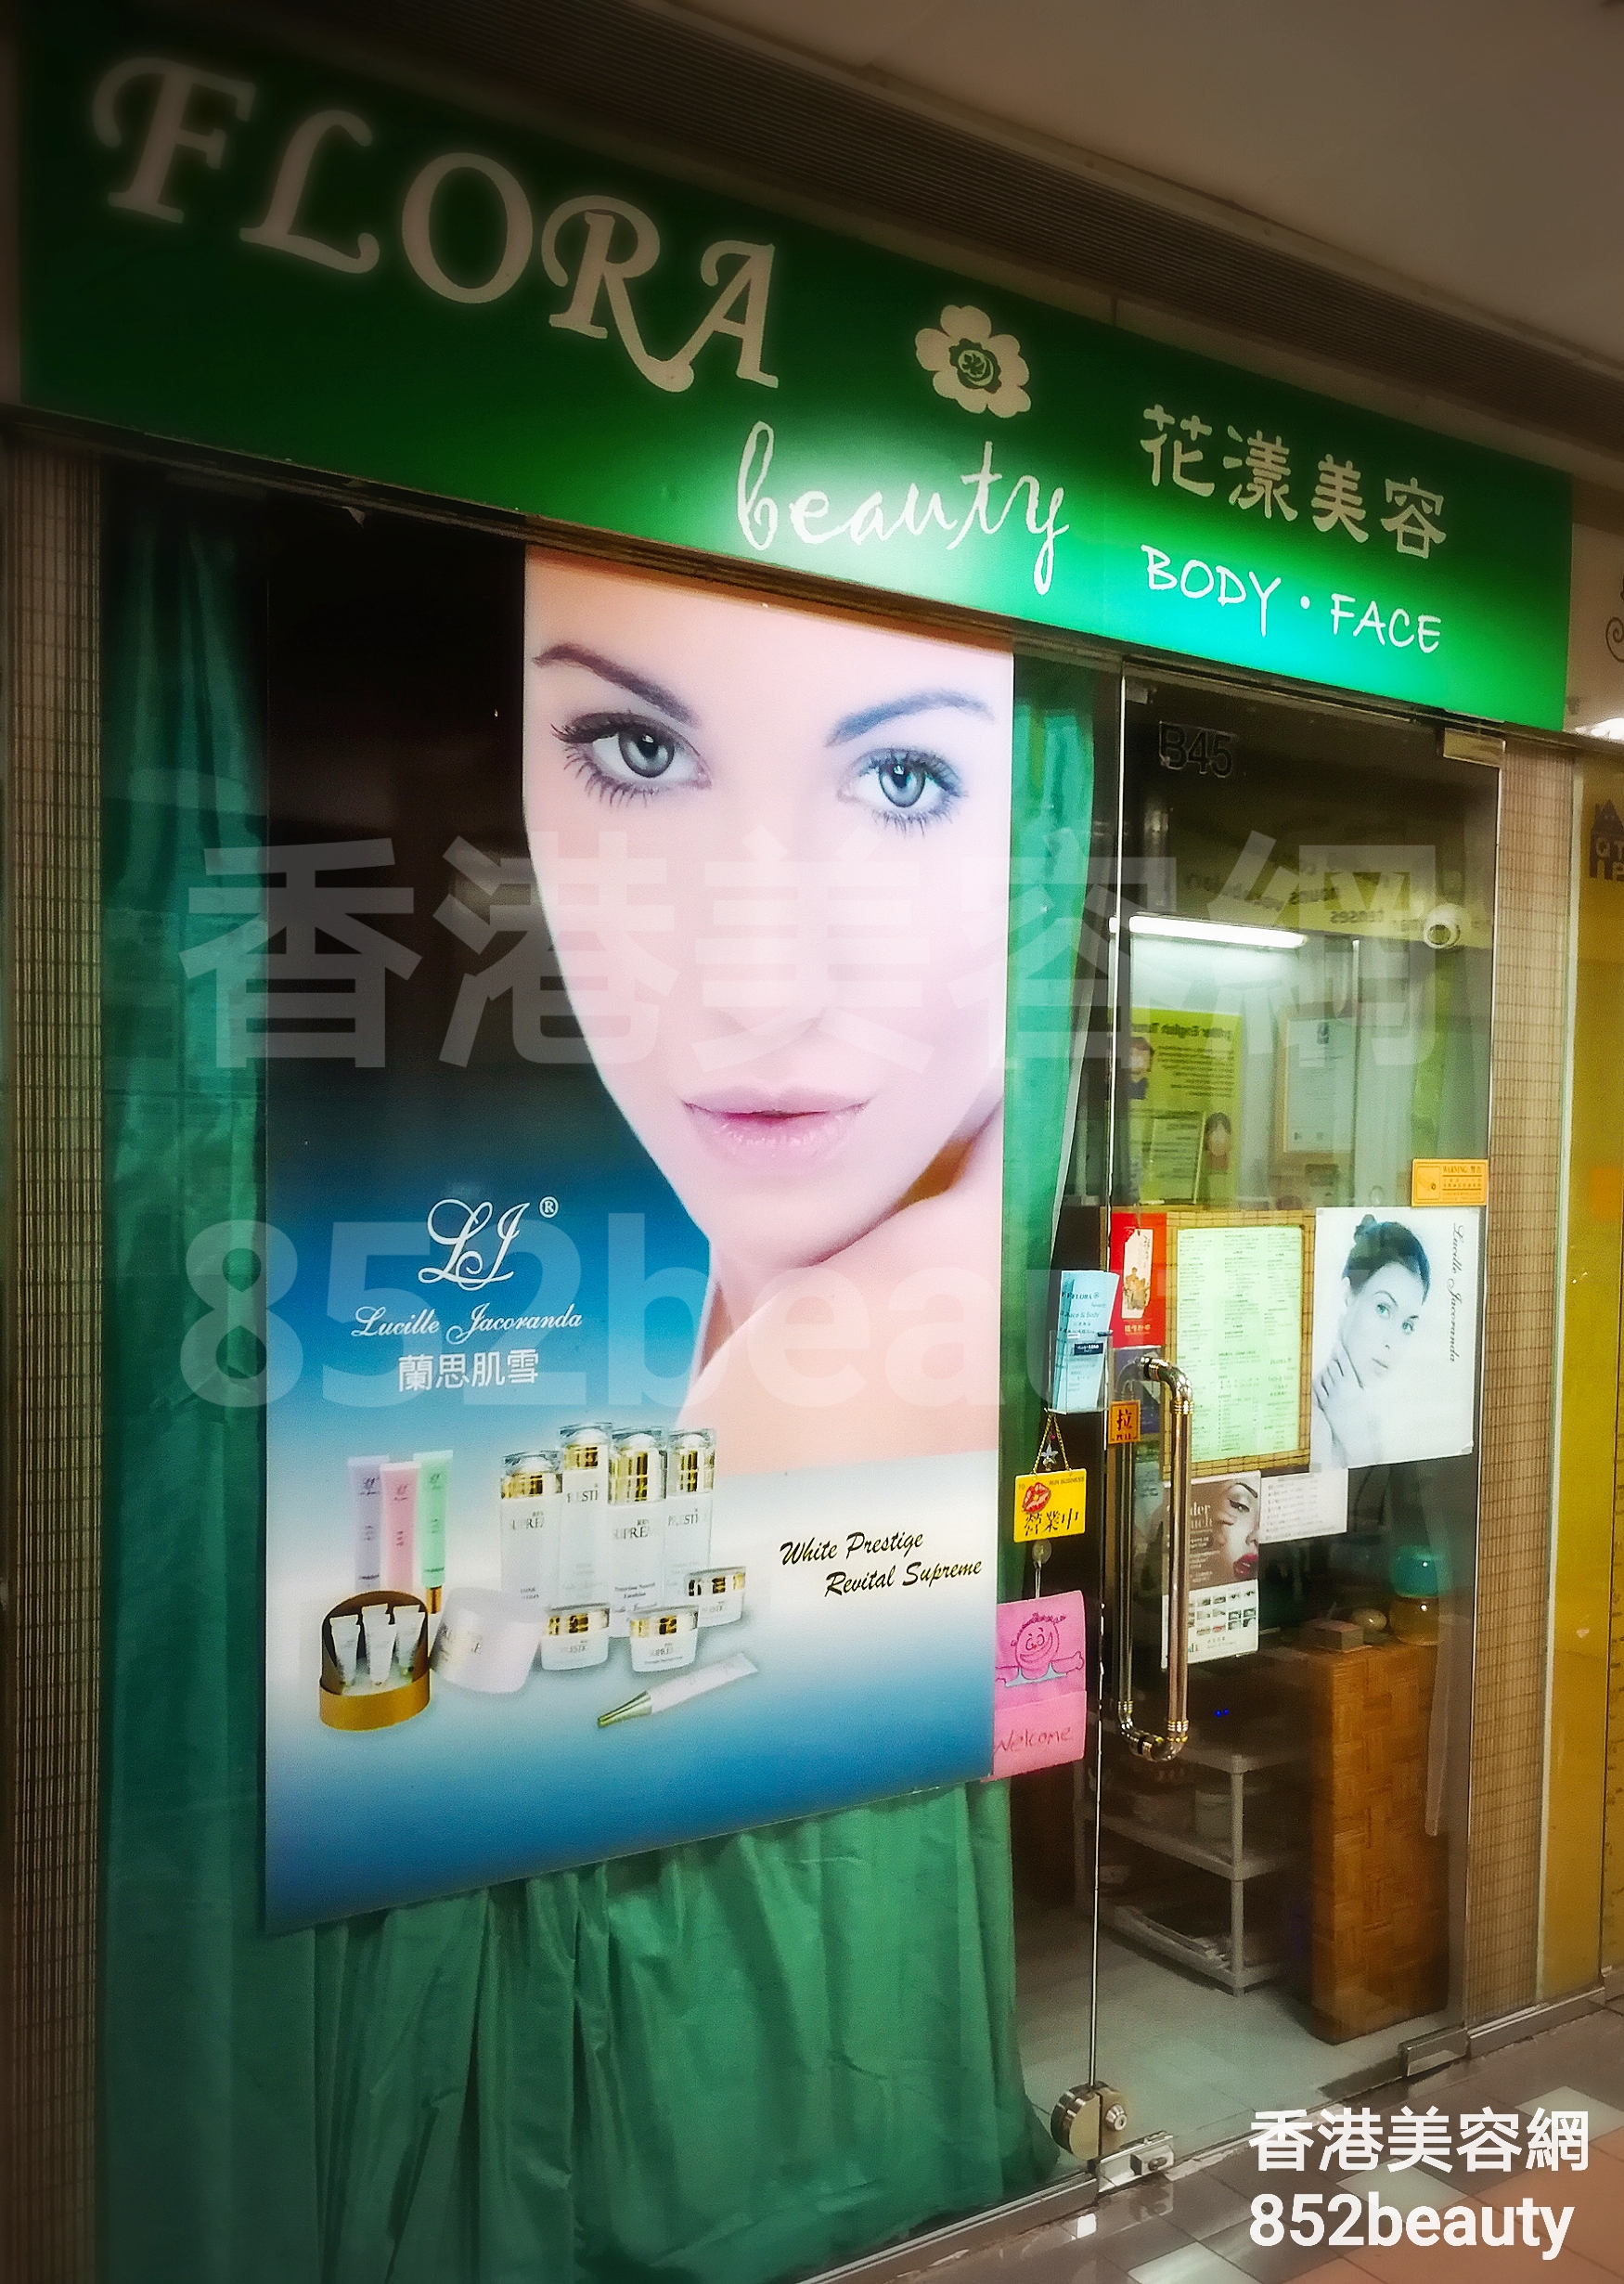 香港美容網 Hong Kong Beauty Salon 美容院 / 美容師: FLORA beauty 花漾美容